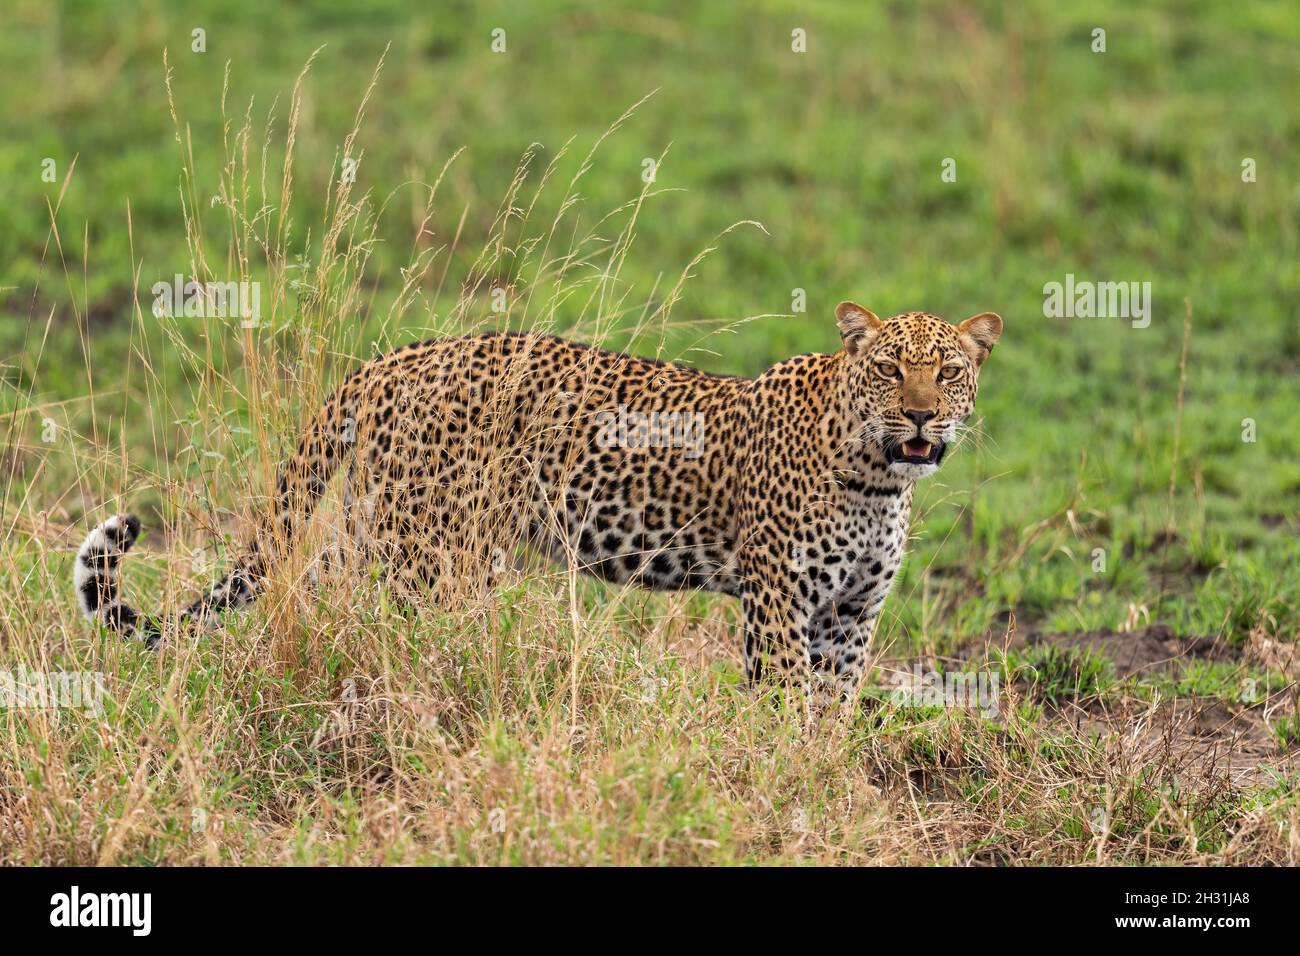 Leopard - Panthera Pardus, wunderschöner, ikonischer Raubtieren aus afrikanischen Büschen, Savannen und Wäldern, Queen Elizabeth National Park, Uganda. Stockfoto